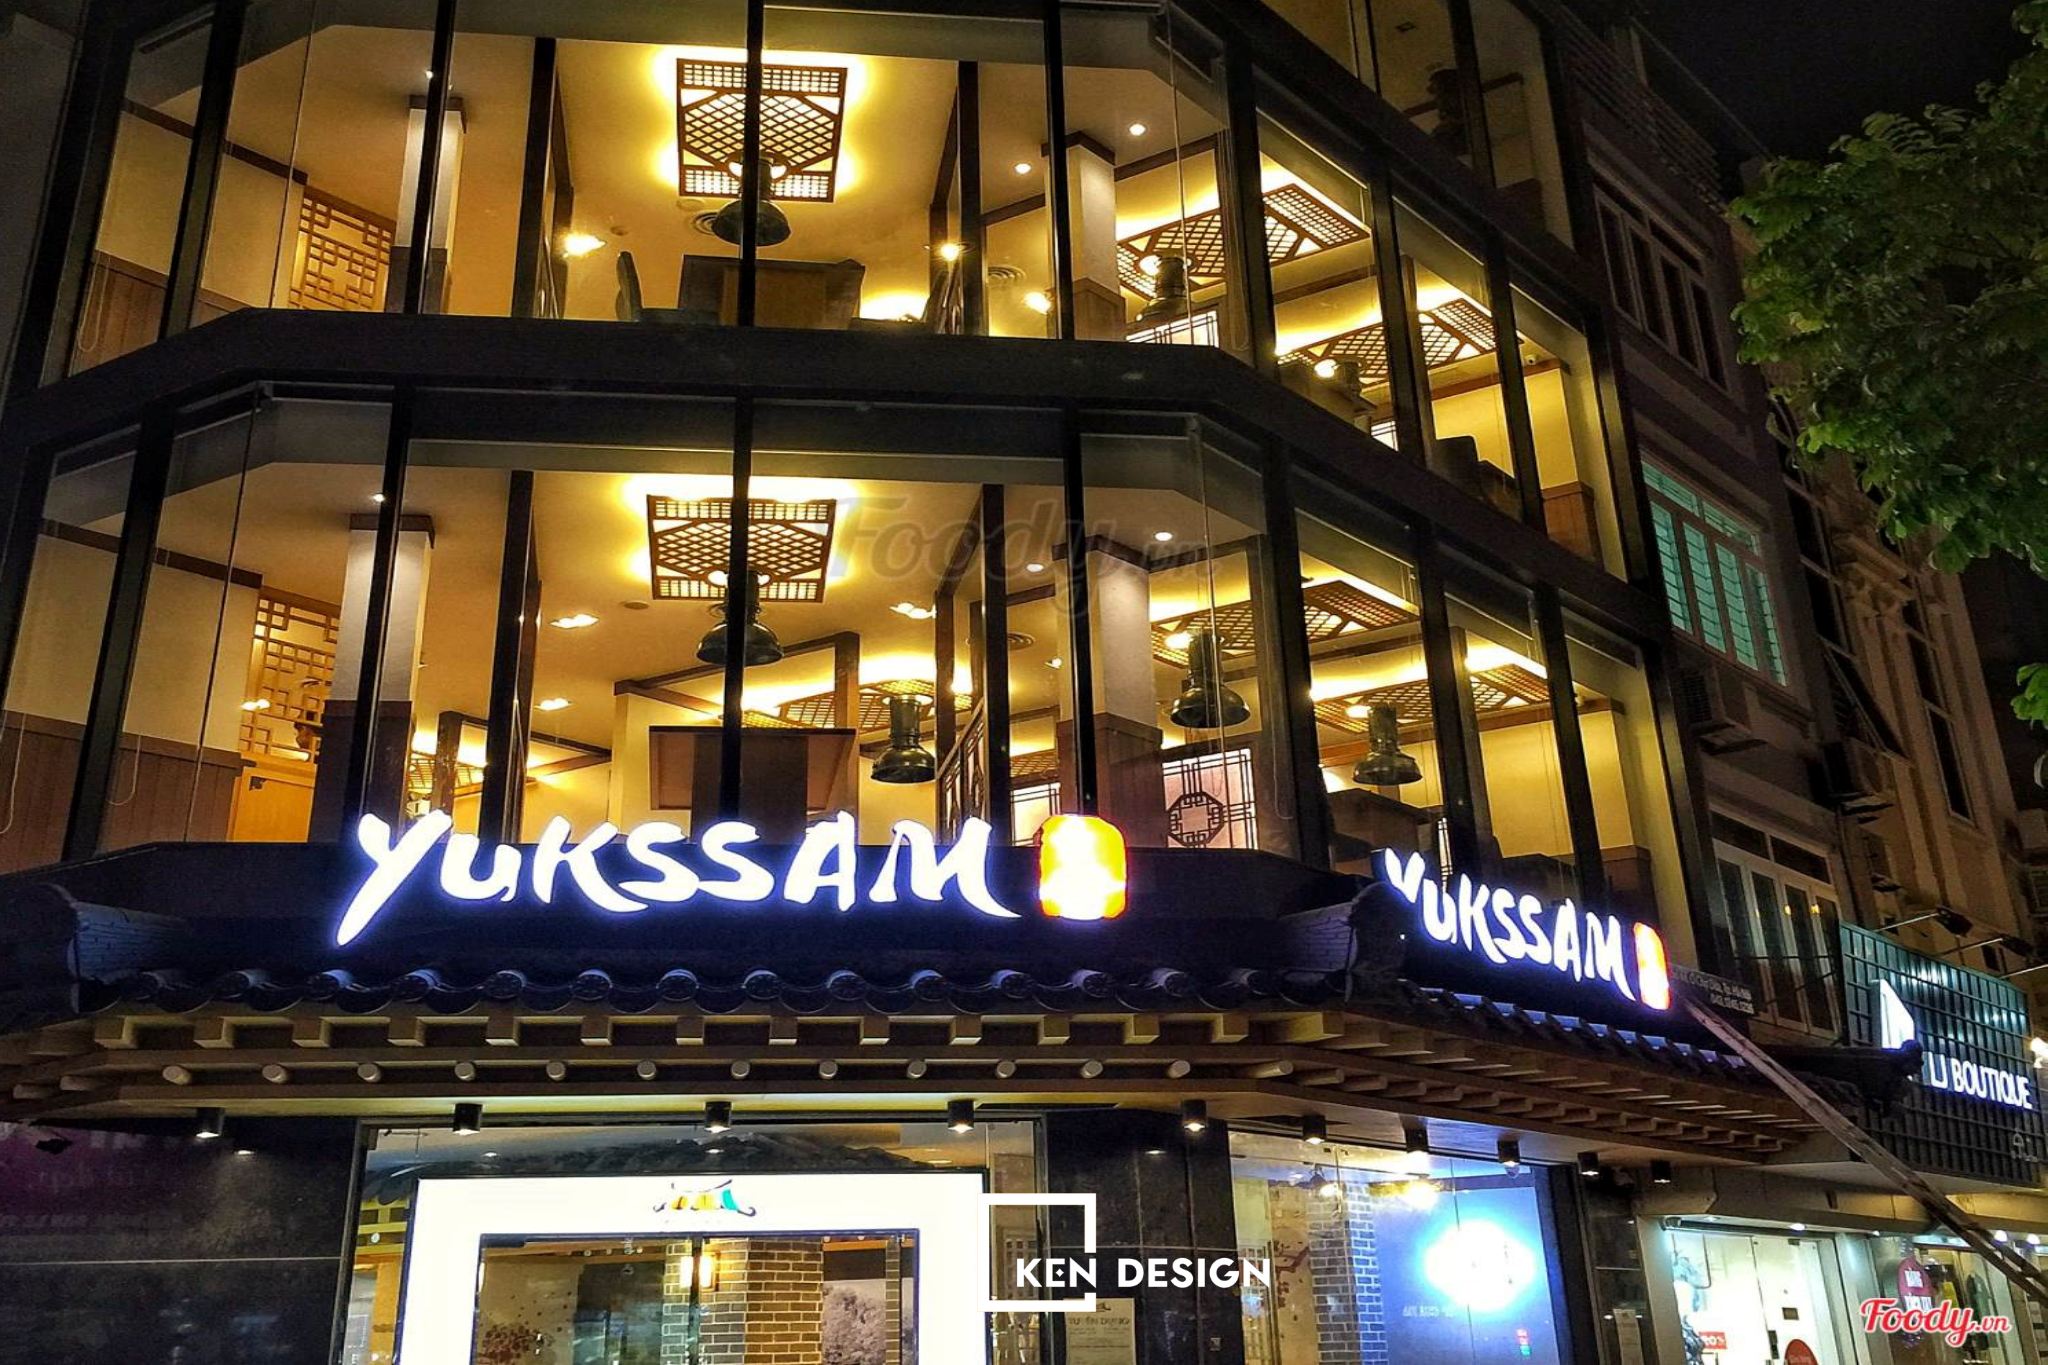 thiết kế nhà hàng yukssam bbq sáng bừng cả một góc trời